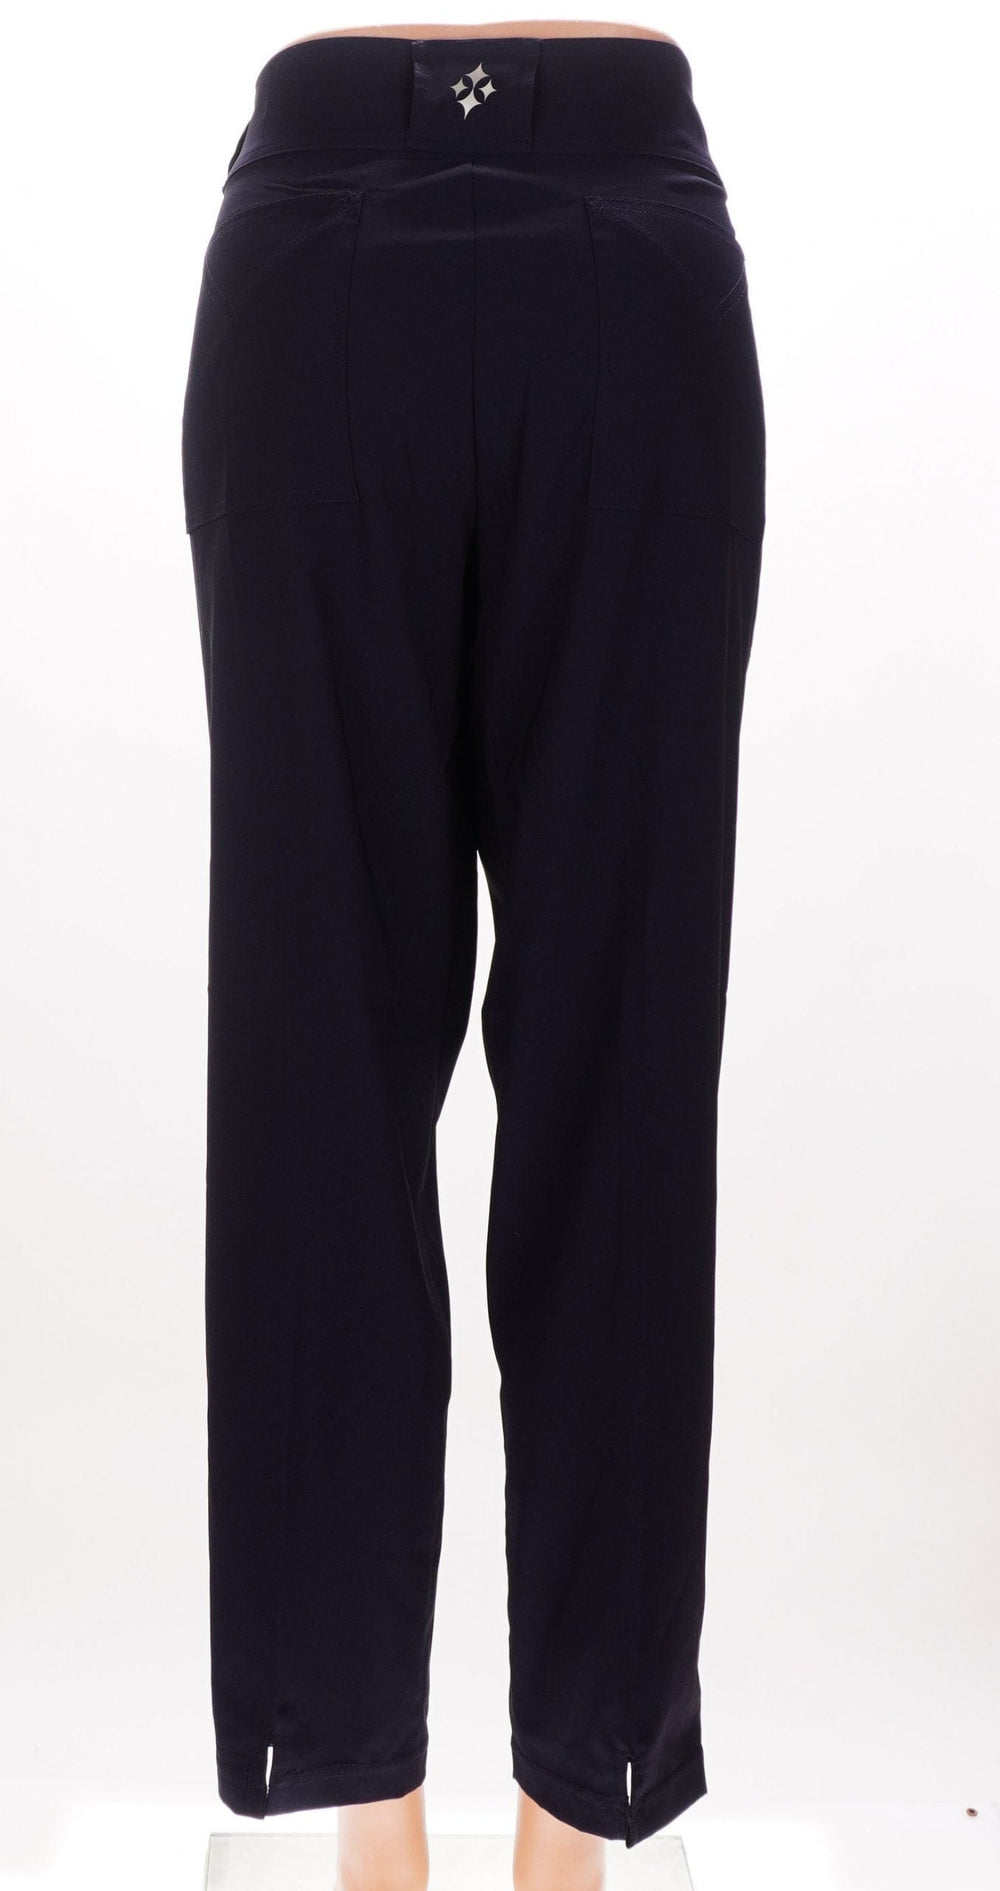 JoFit Belted Crop Pant - Black- Size 16